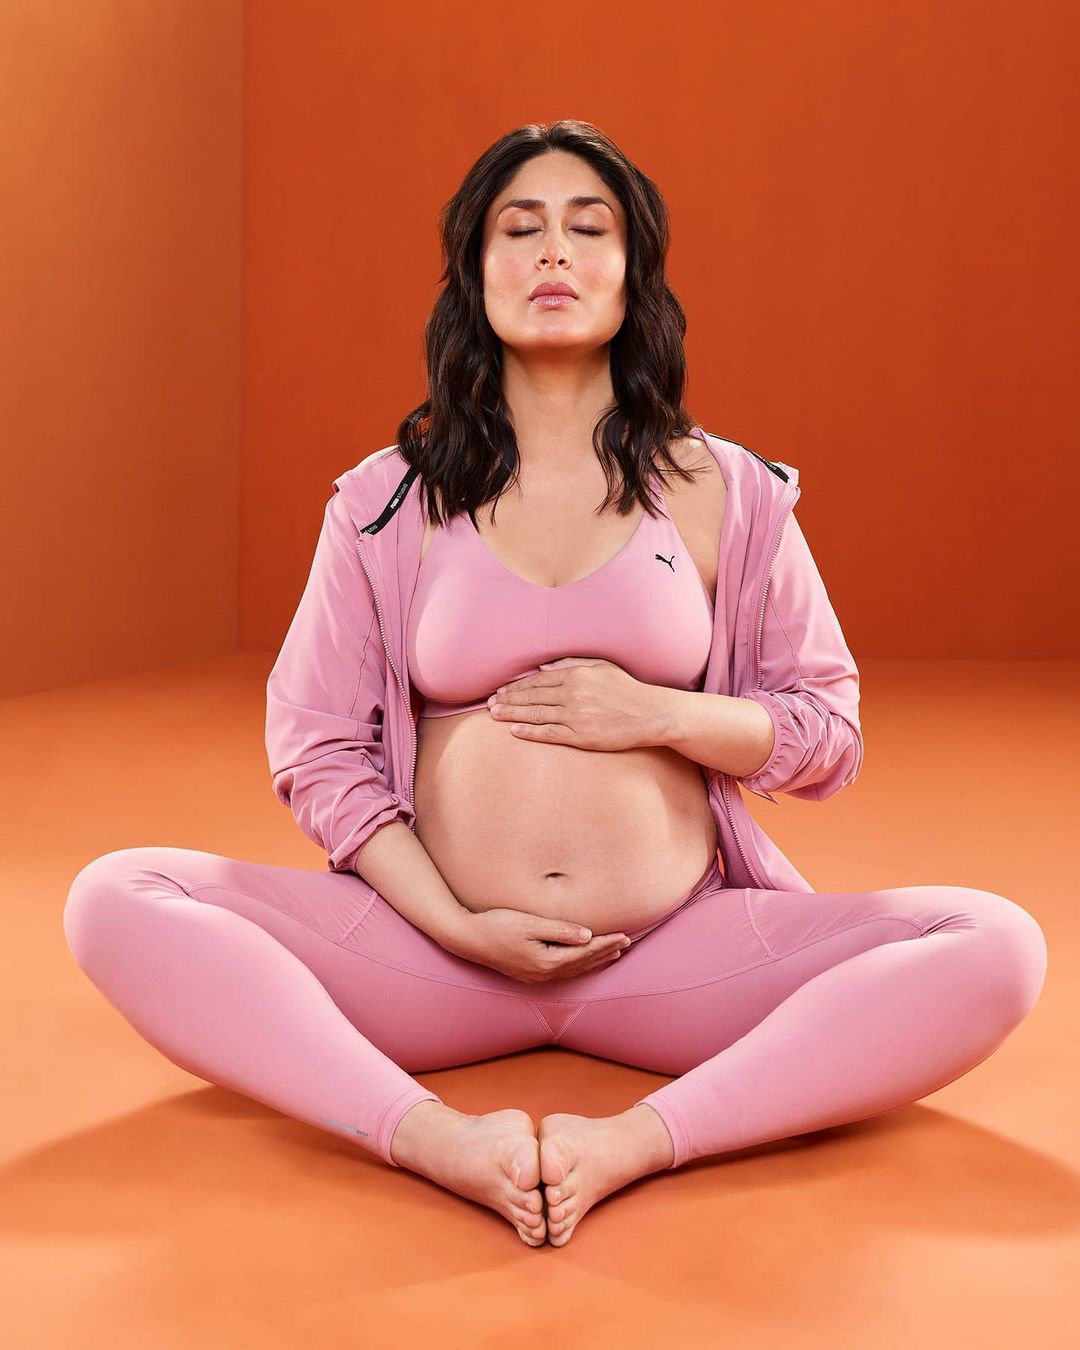 كارينا كابور تمارس اليوجا وتظهر رشاقتها أثناء الحمل في فوتوسيشن جديد